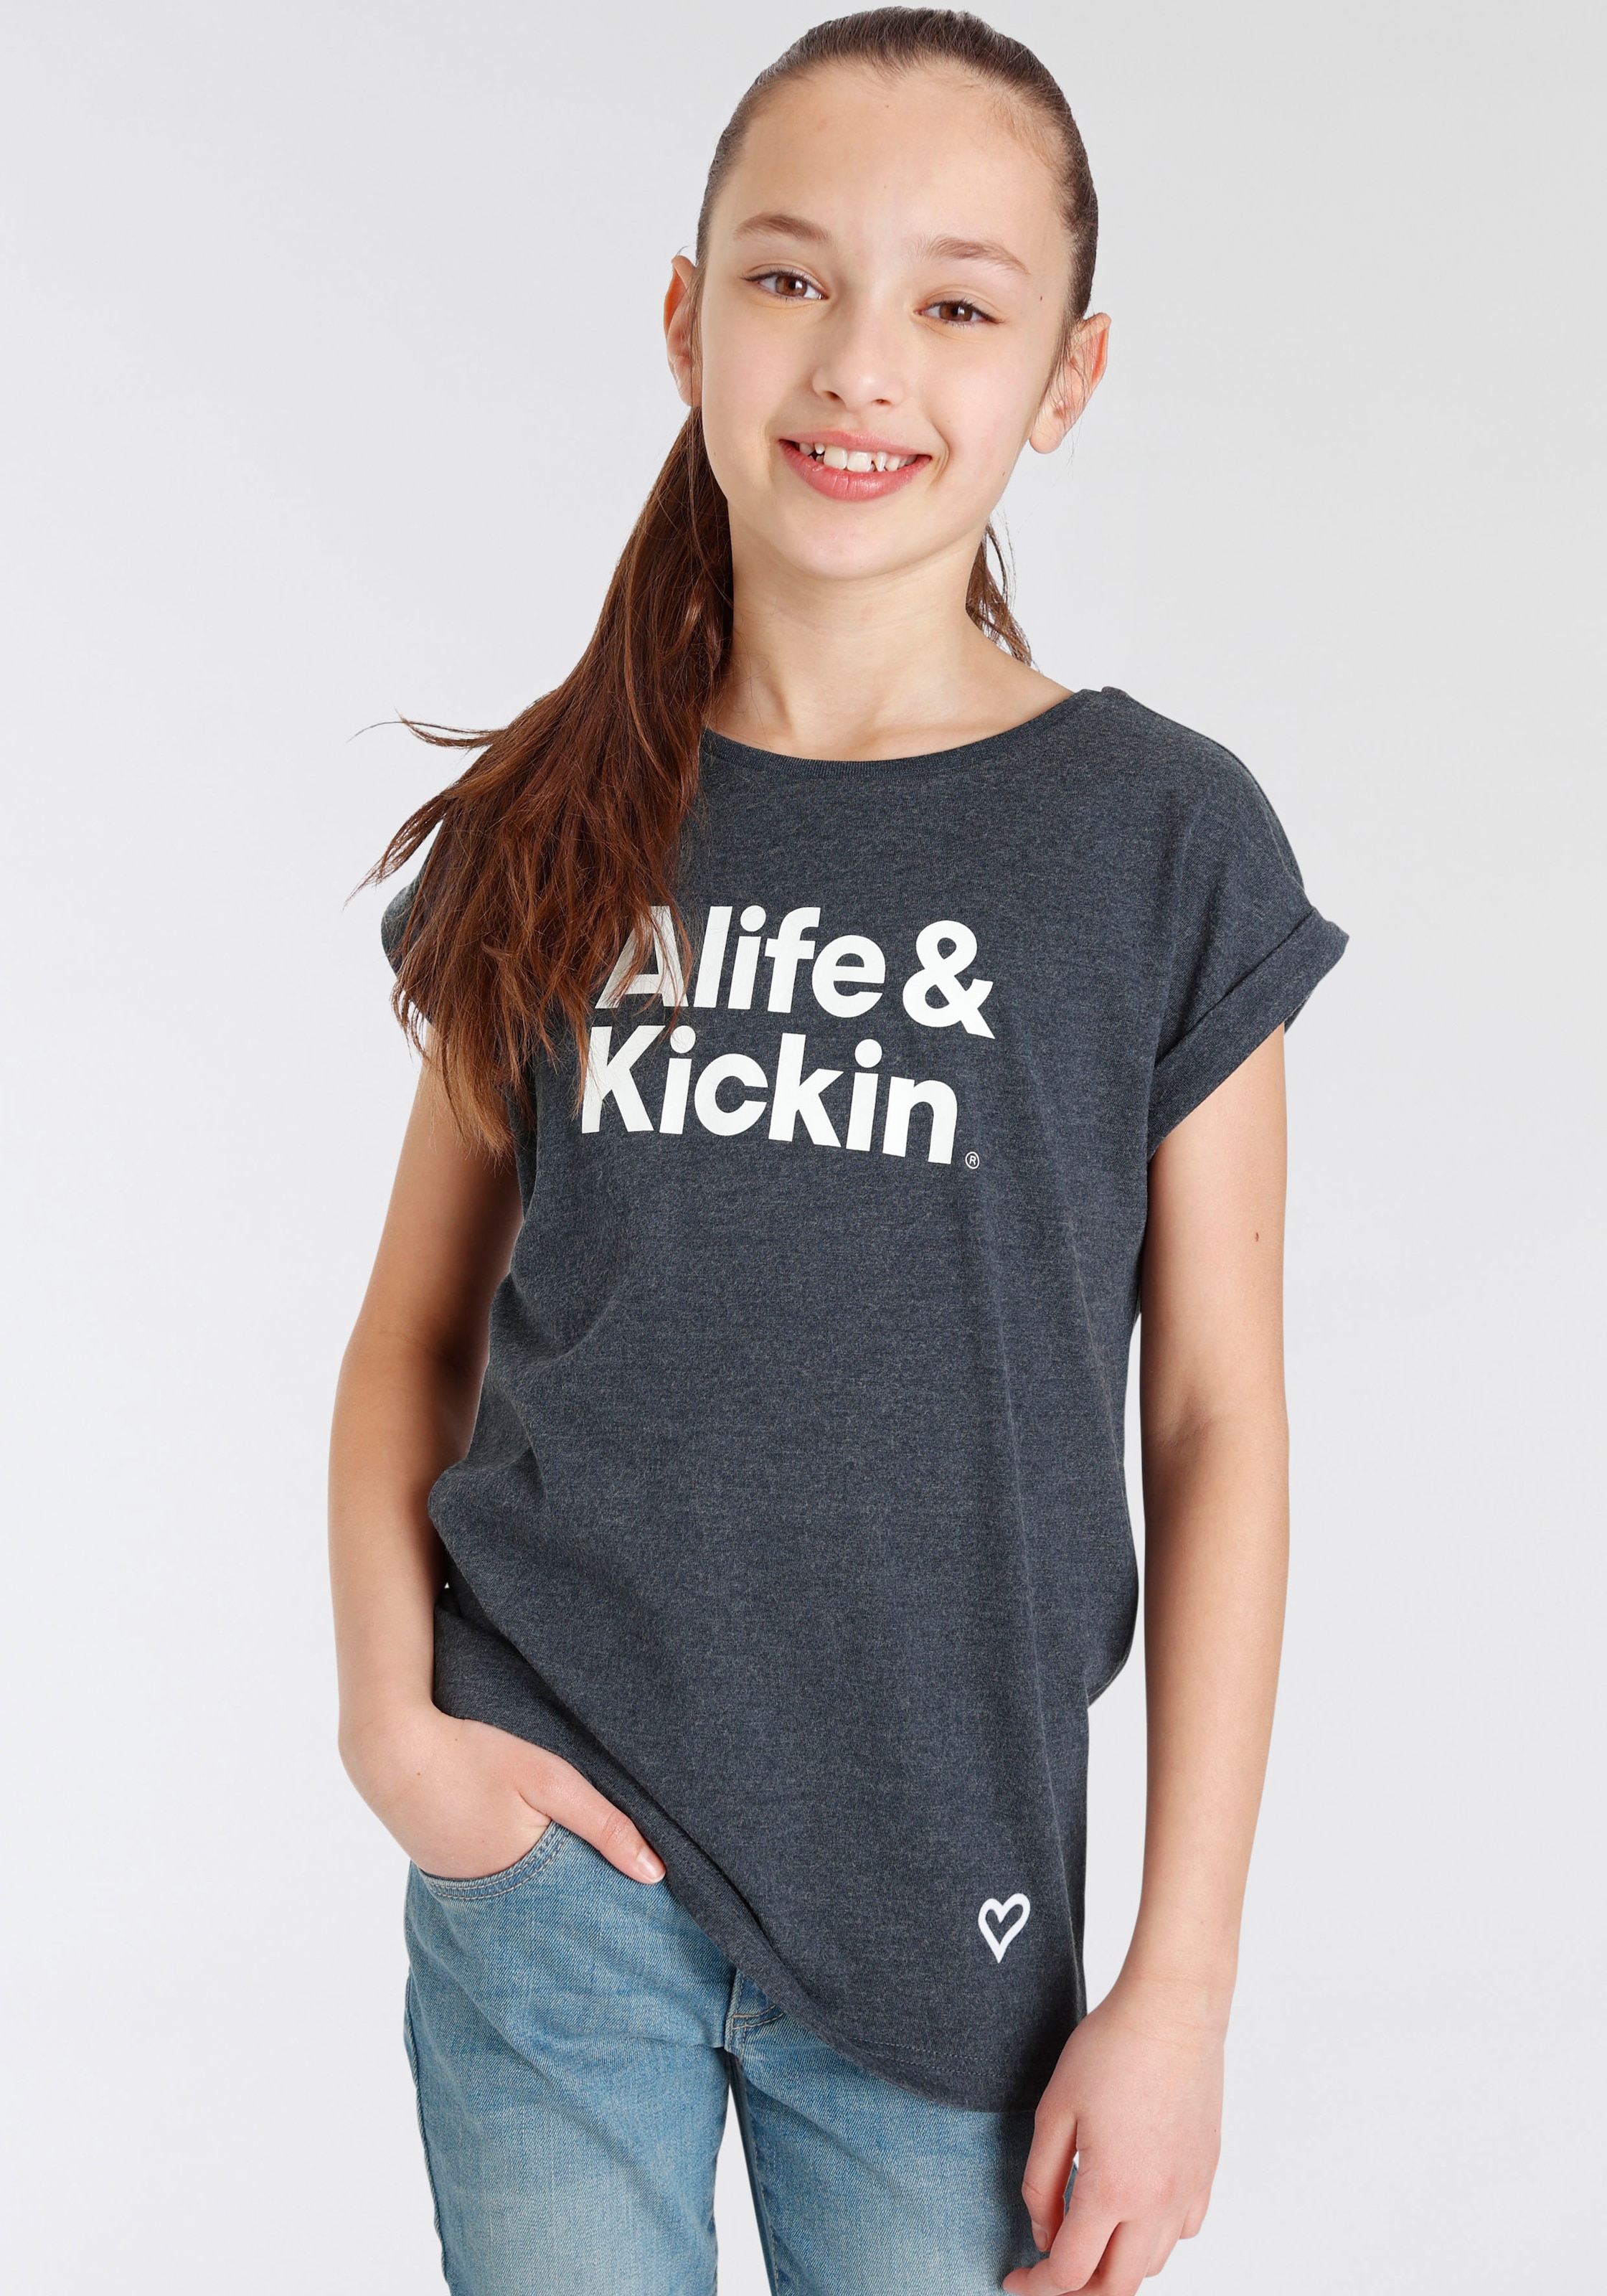 OTTO & & Kickin MARKE! T-Shirt NEUE für Alife »mit Alife Kickin Logo bei Druck«, Kids.